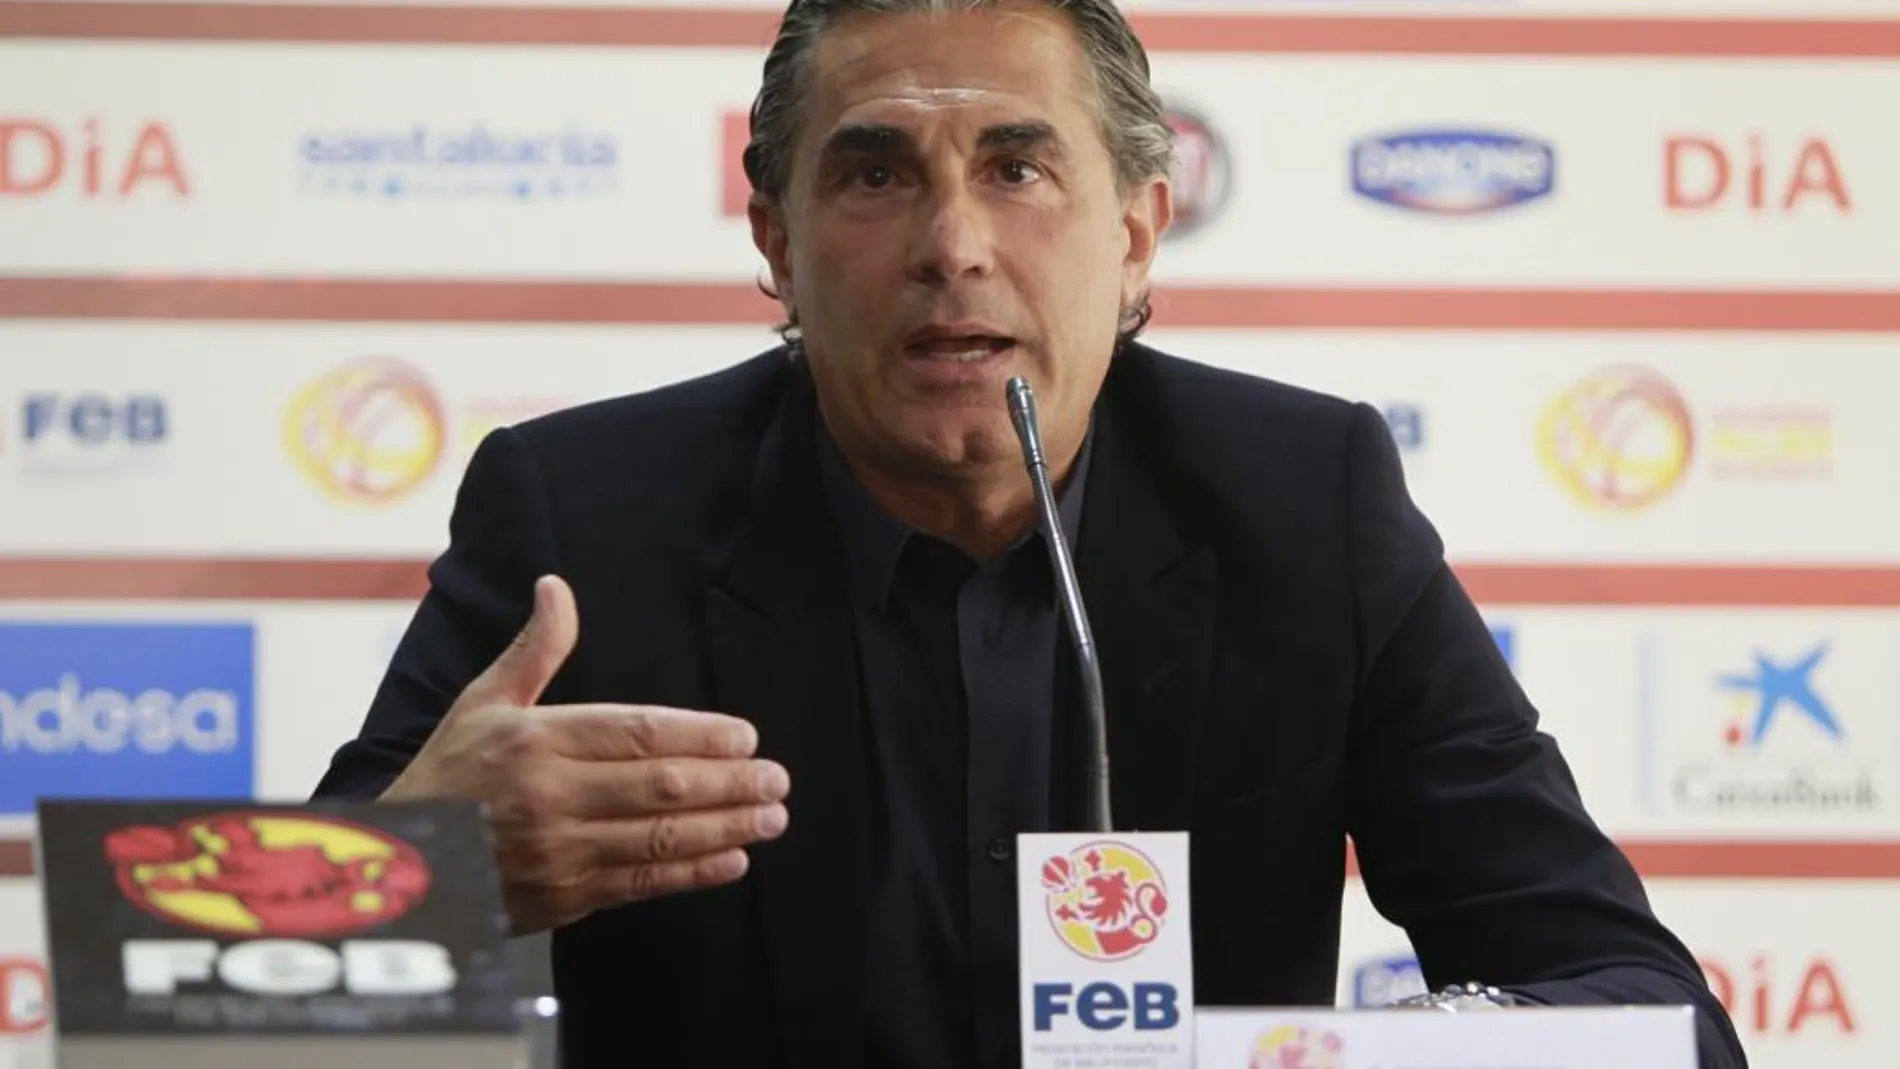 Sergio Scariol durante la rueda de prensa que ofreció junto al presidente de la Federación Española de Baloncesto (FEB), Jorge Garbajosa